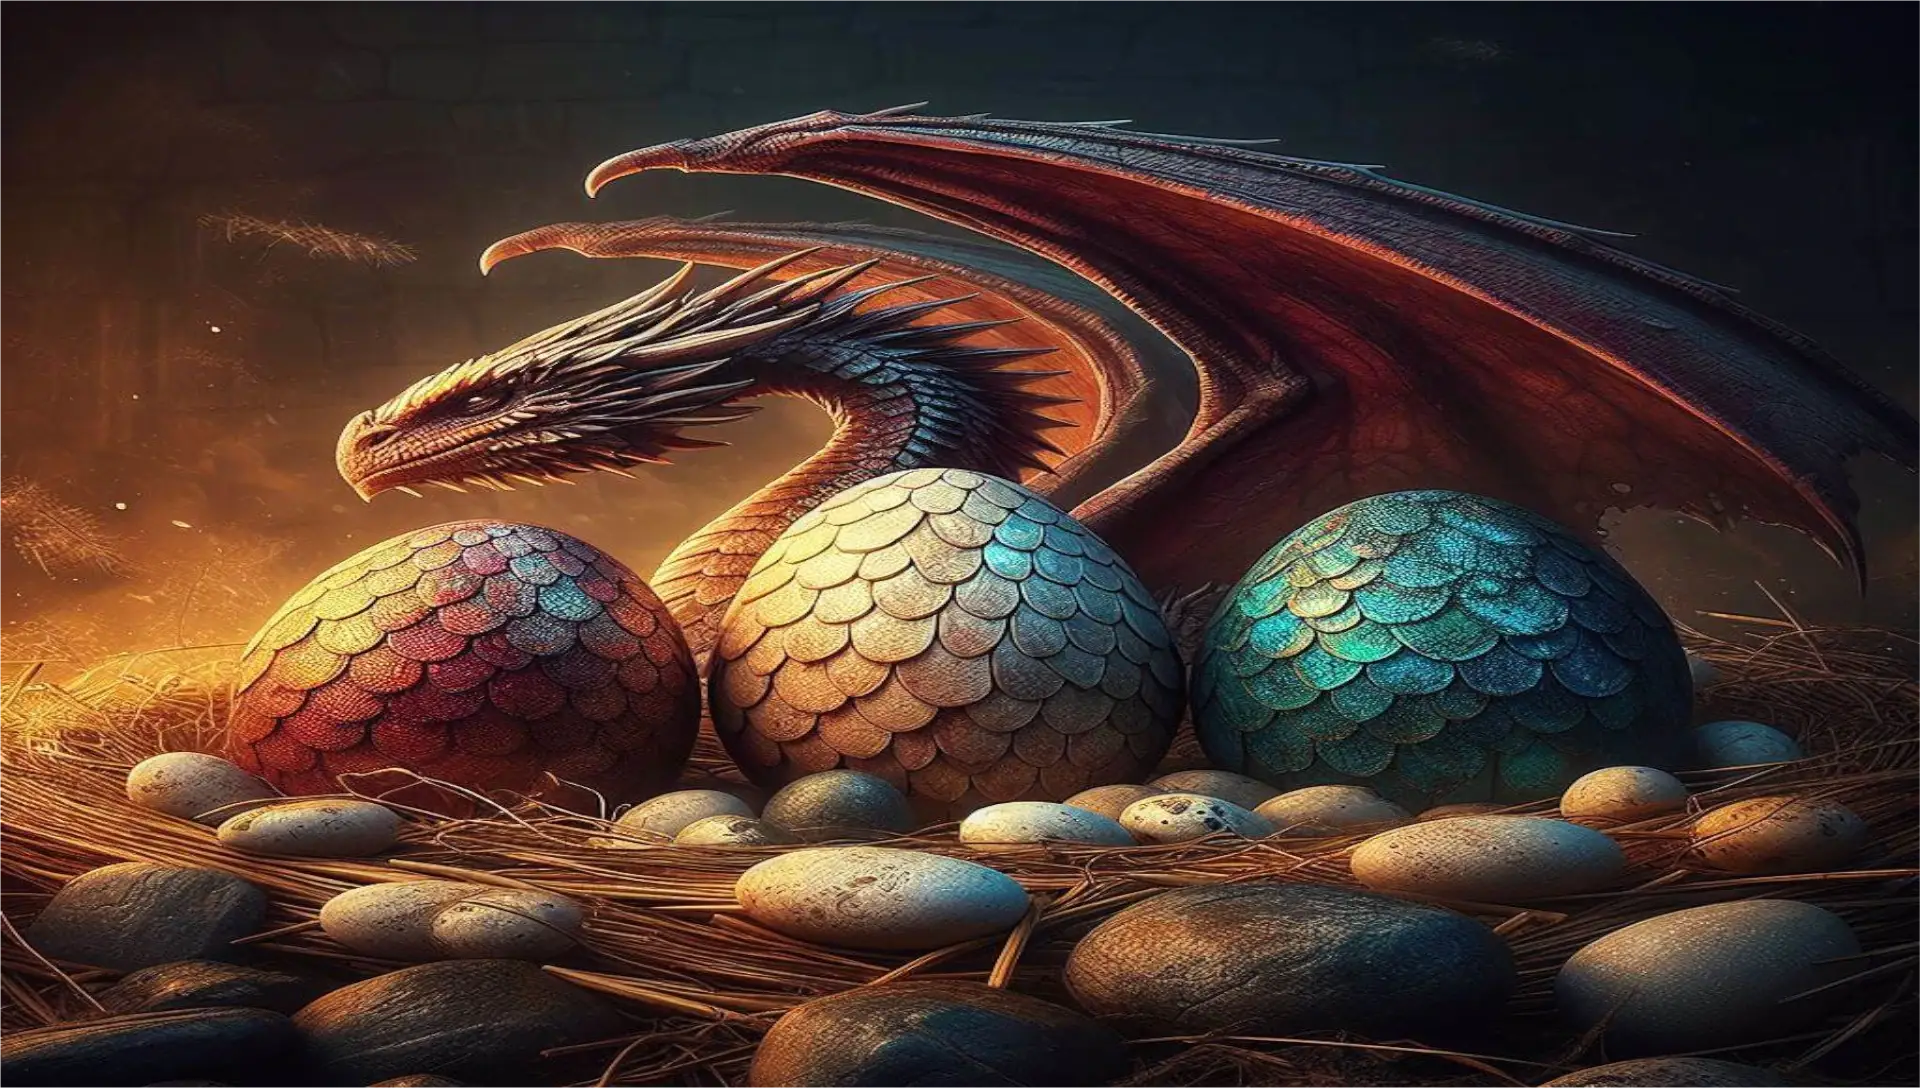 Un dibujo de un pequeño dragón rodeado de otros huevos de dragón de distintos colores